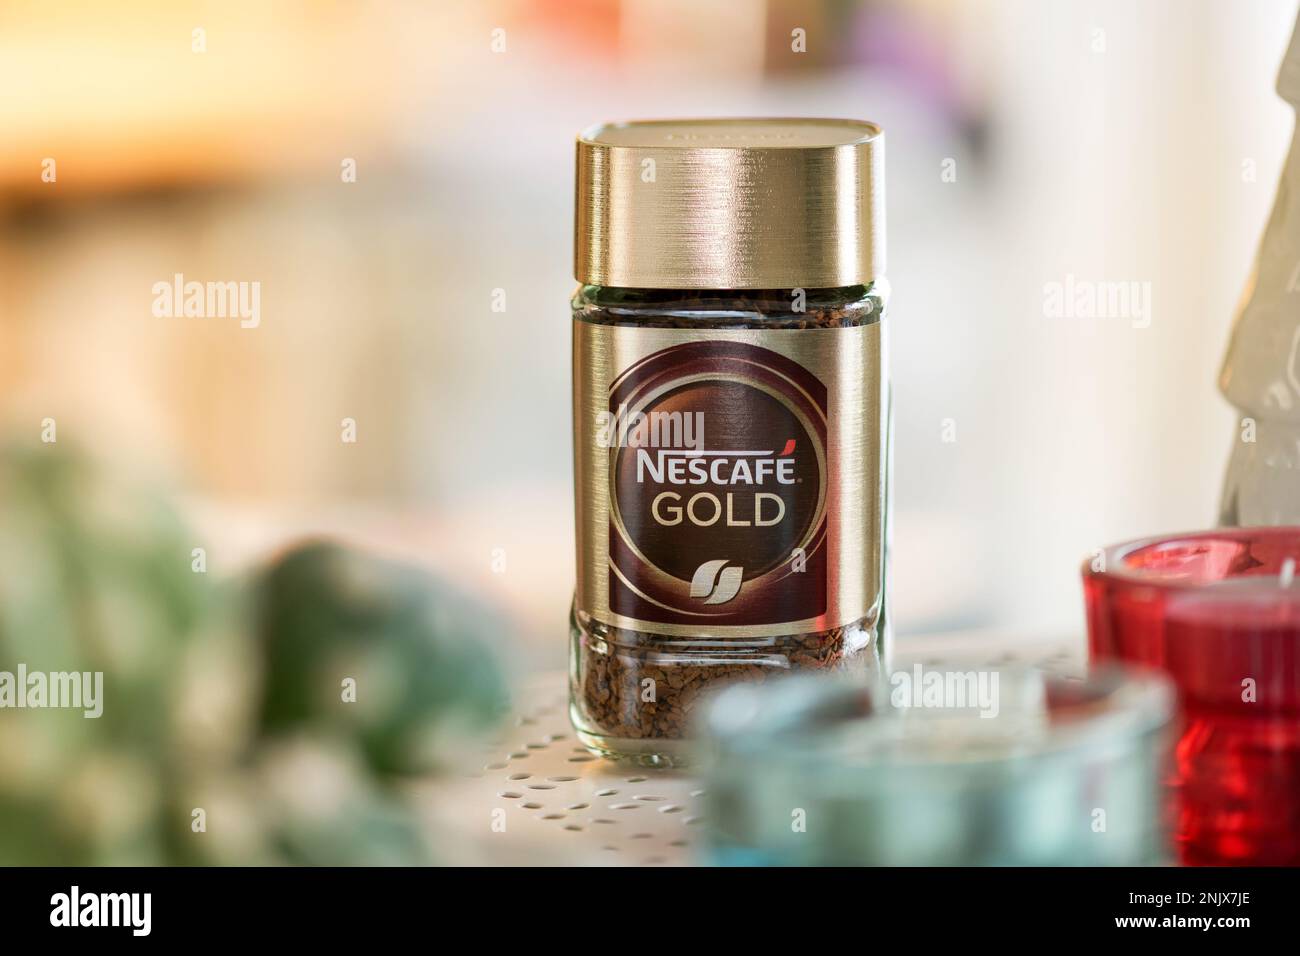 Tarro de cristal de café Nescafe colocado en la mesa contra el fondo borroso de la cocina. Producto Nestlé Foto de stock